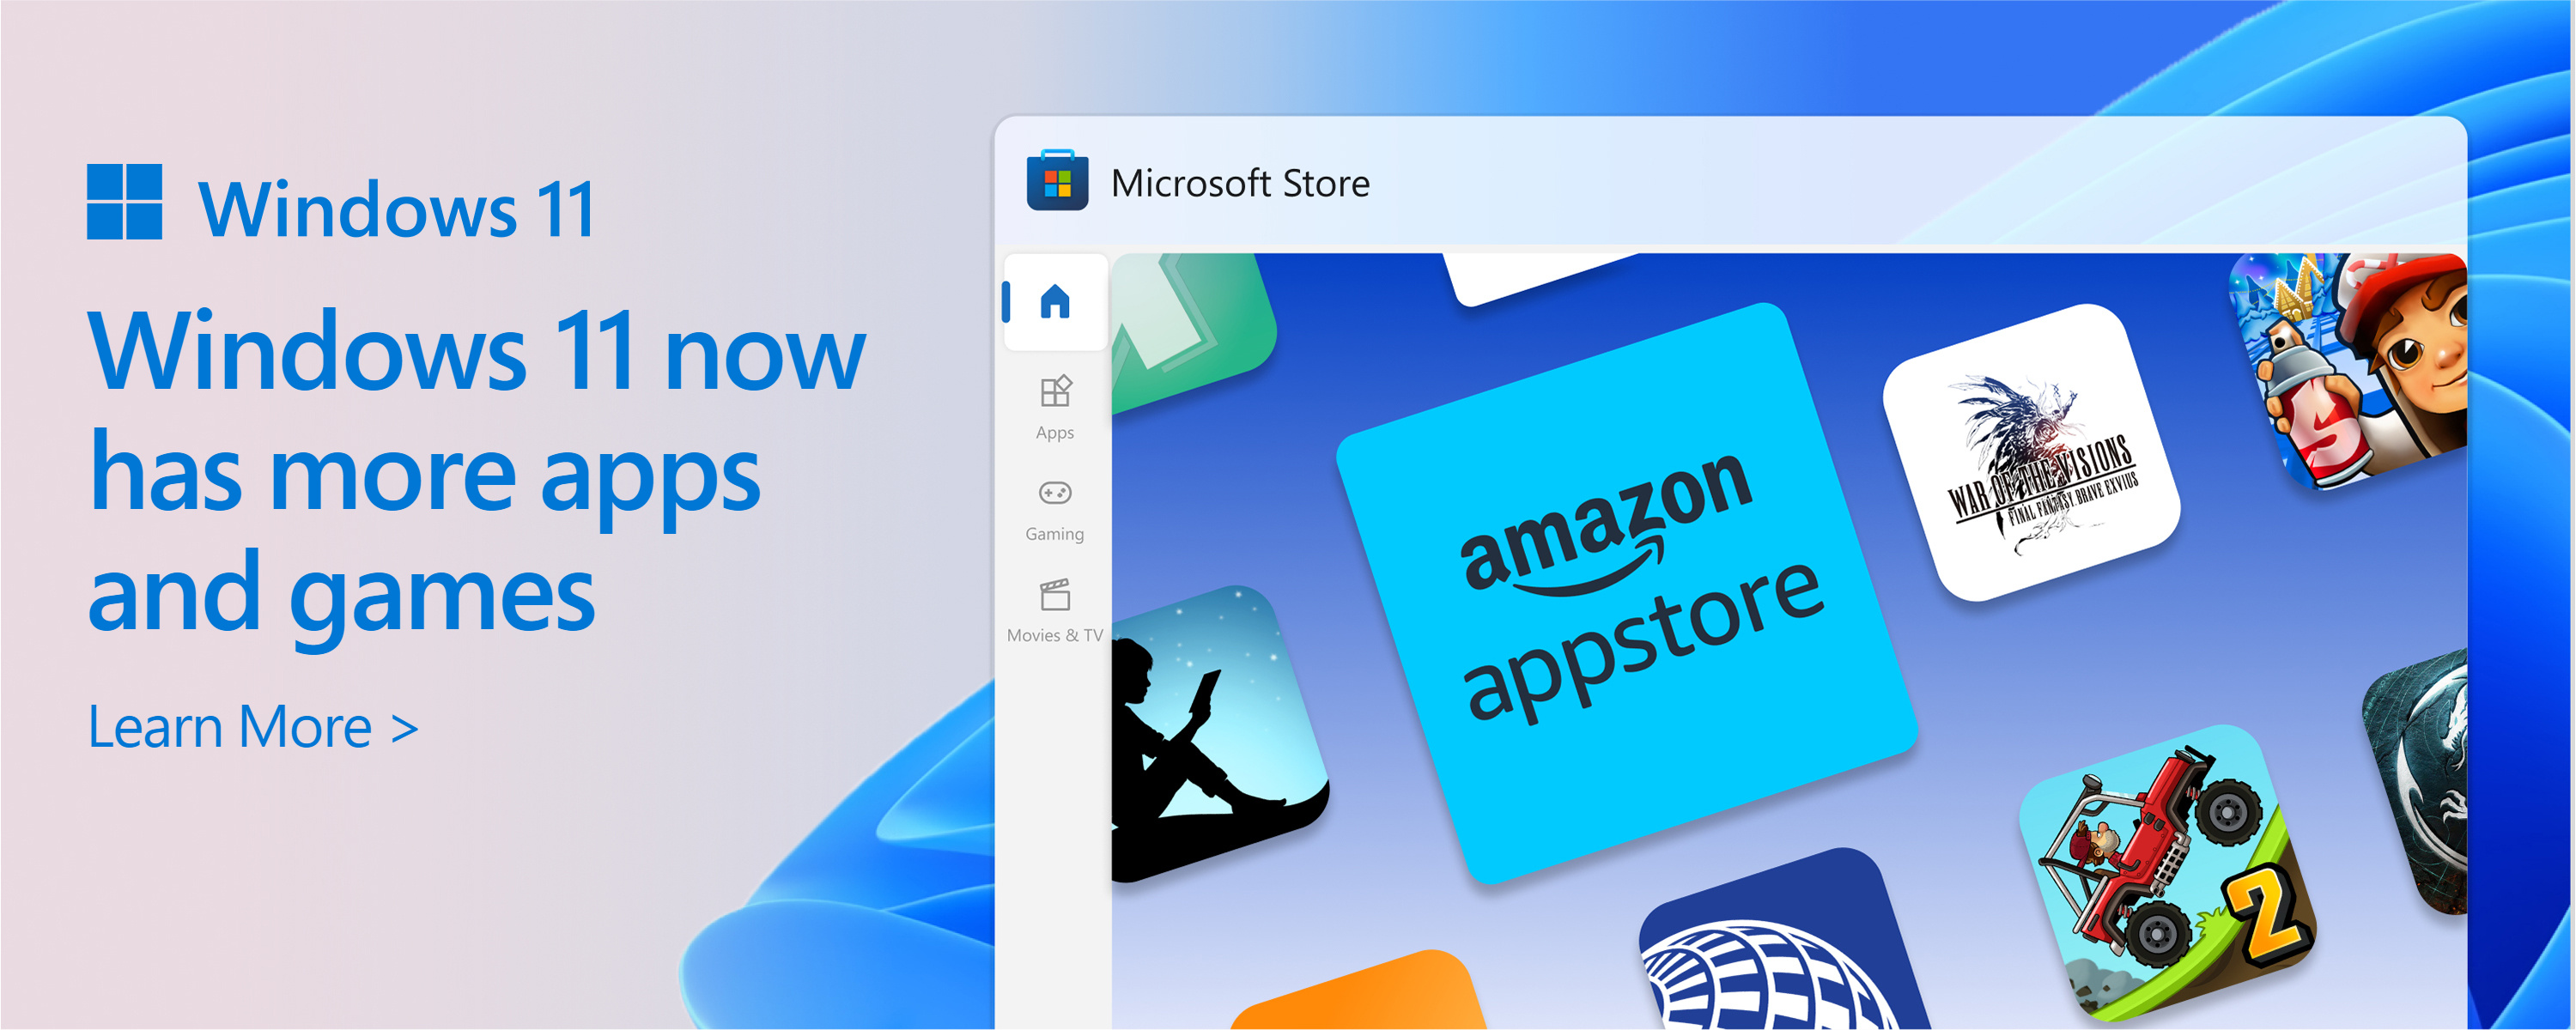 Snimak ekrana prodavnice Microsoft Store sa tekstom: Katalog prodavnice Microsoft Store raste. Windows 11 vam pruža više aplikacija i igara koje želite i koje su vam potrebne.